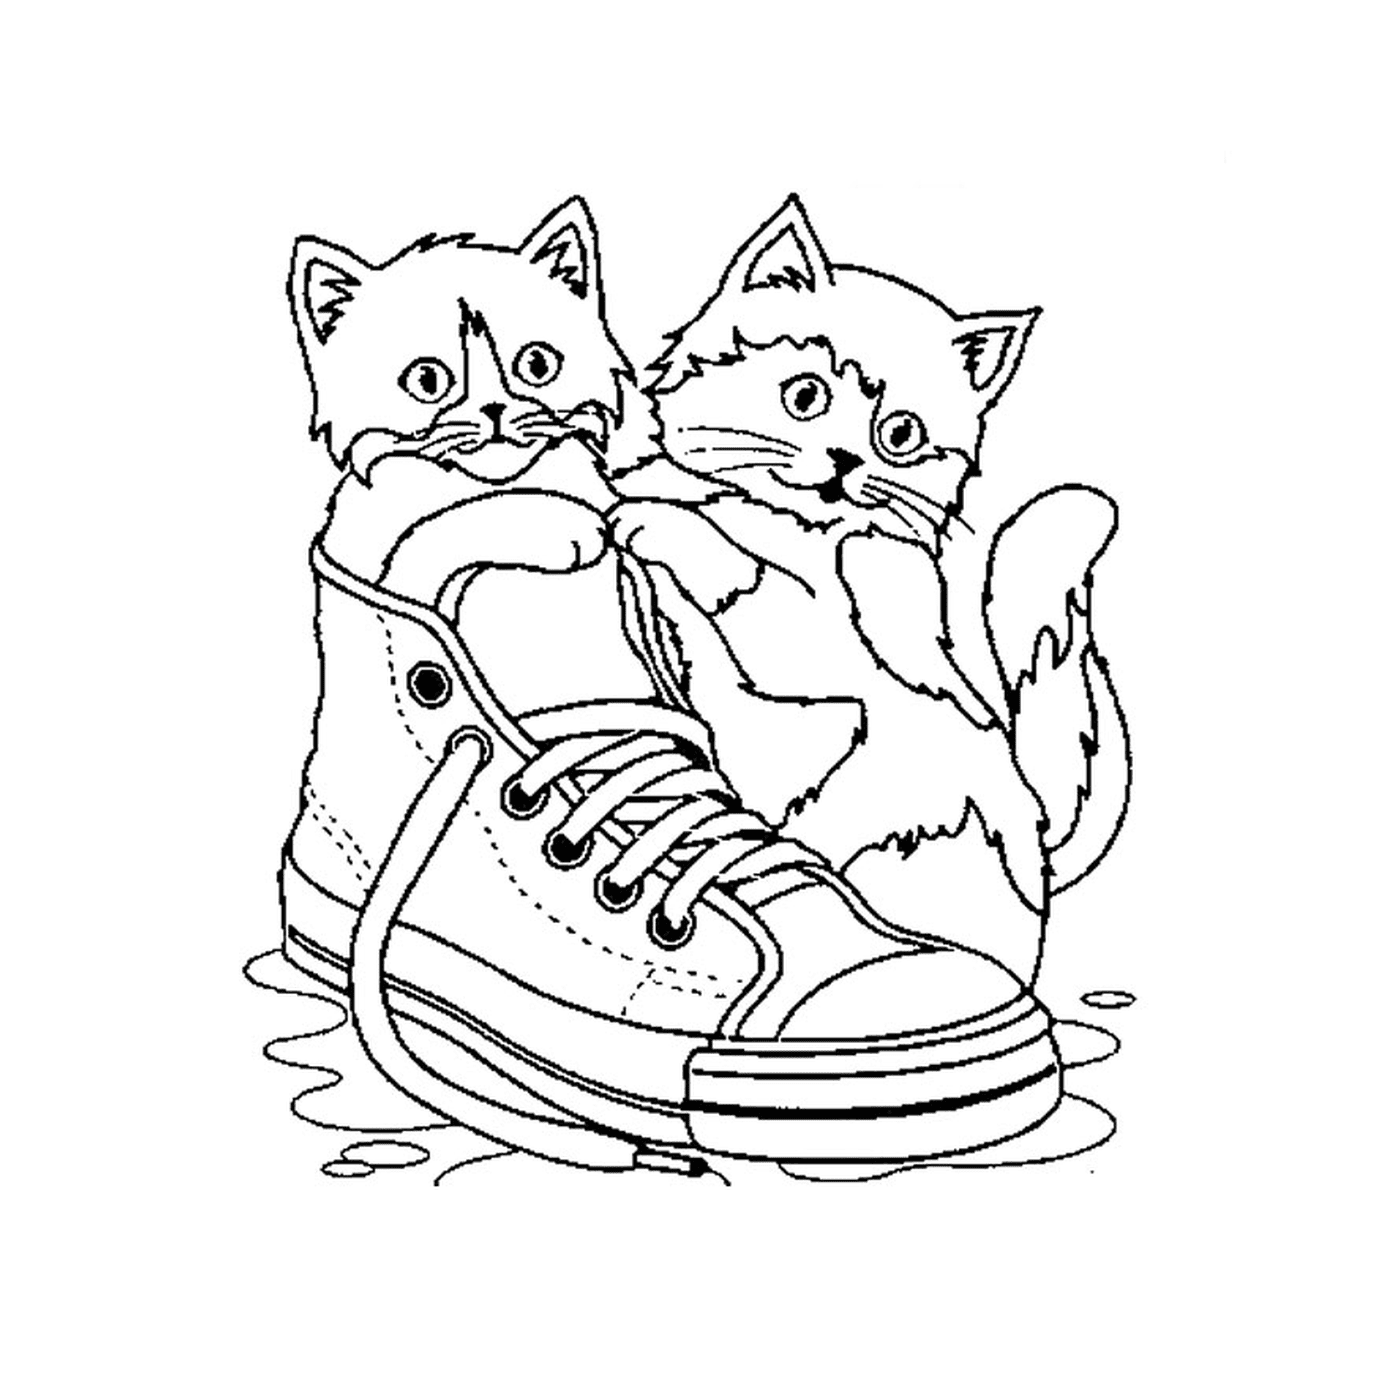   Deux chats assis sur une chaussure dans l'eau 